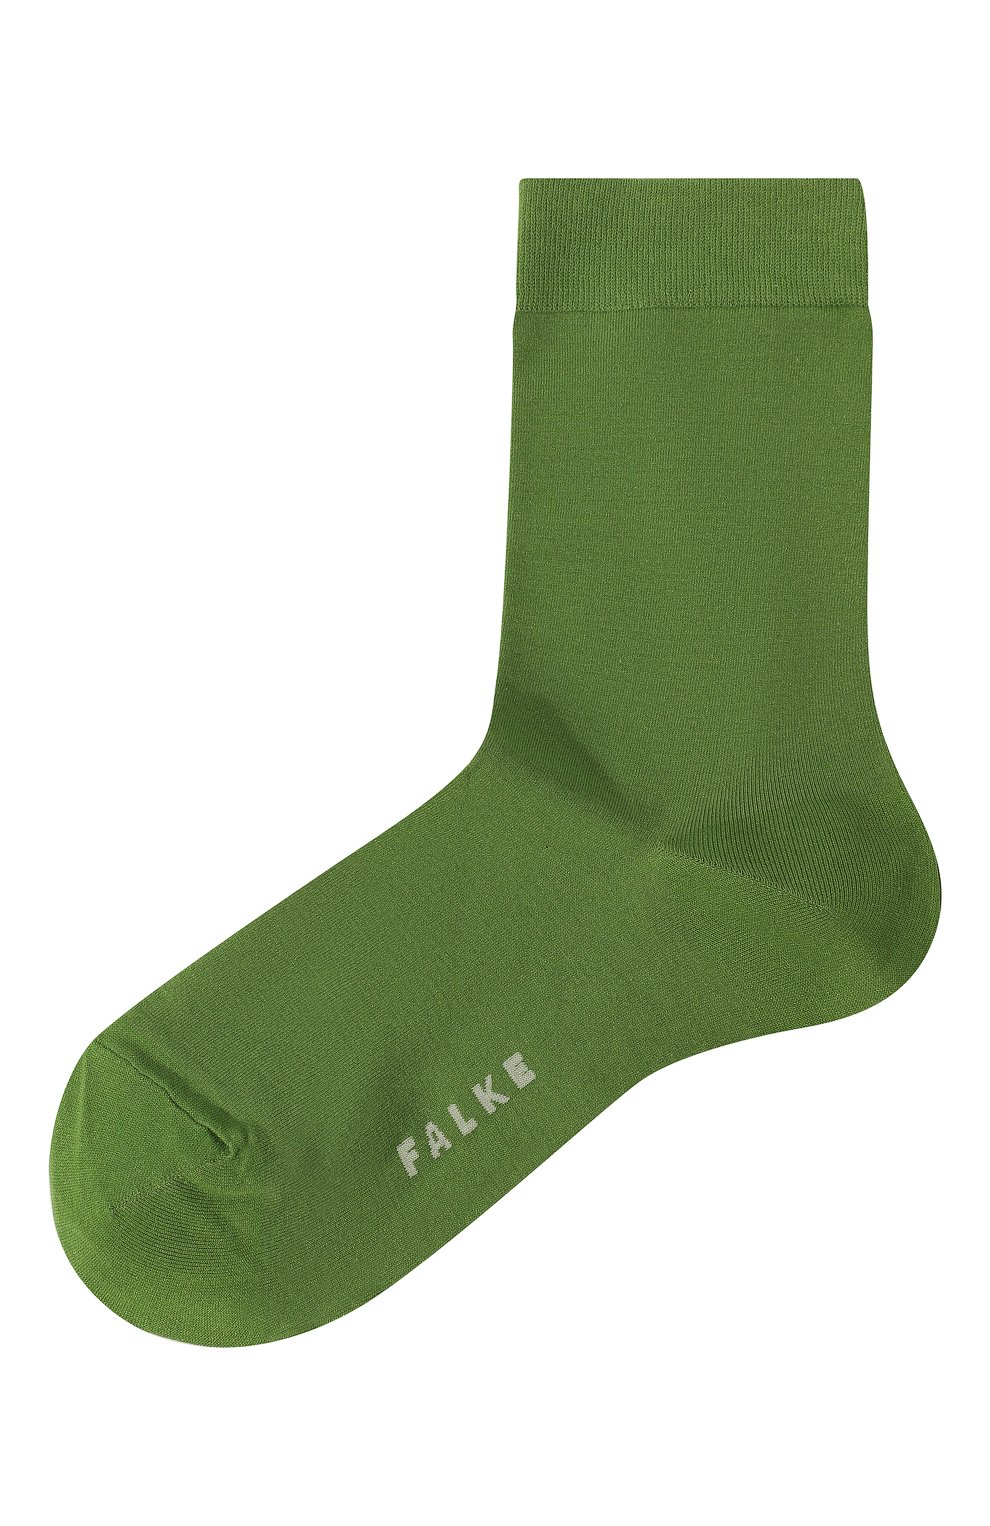 Женские носки FALKE зеленого цвета, арт. 47105 | Фото 1 (Материал внешний: Синтетический материал, Хлопок)